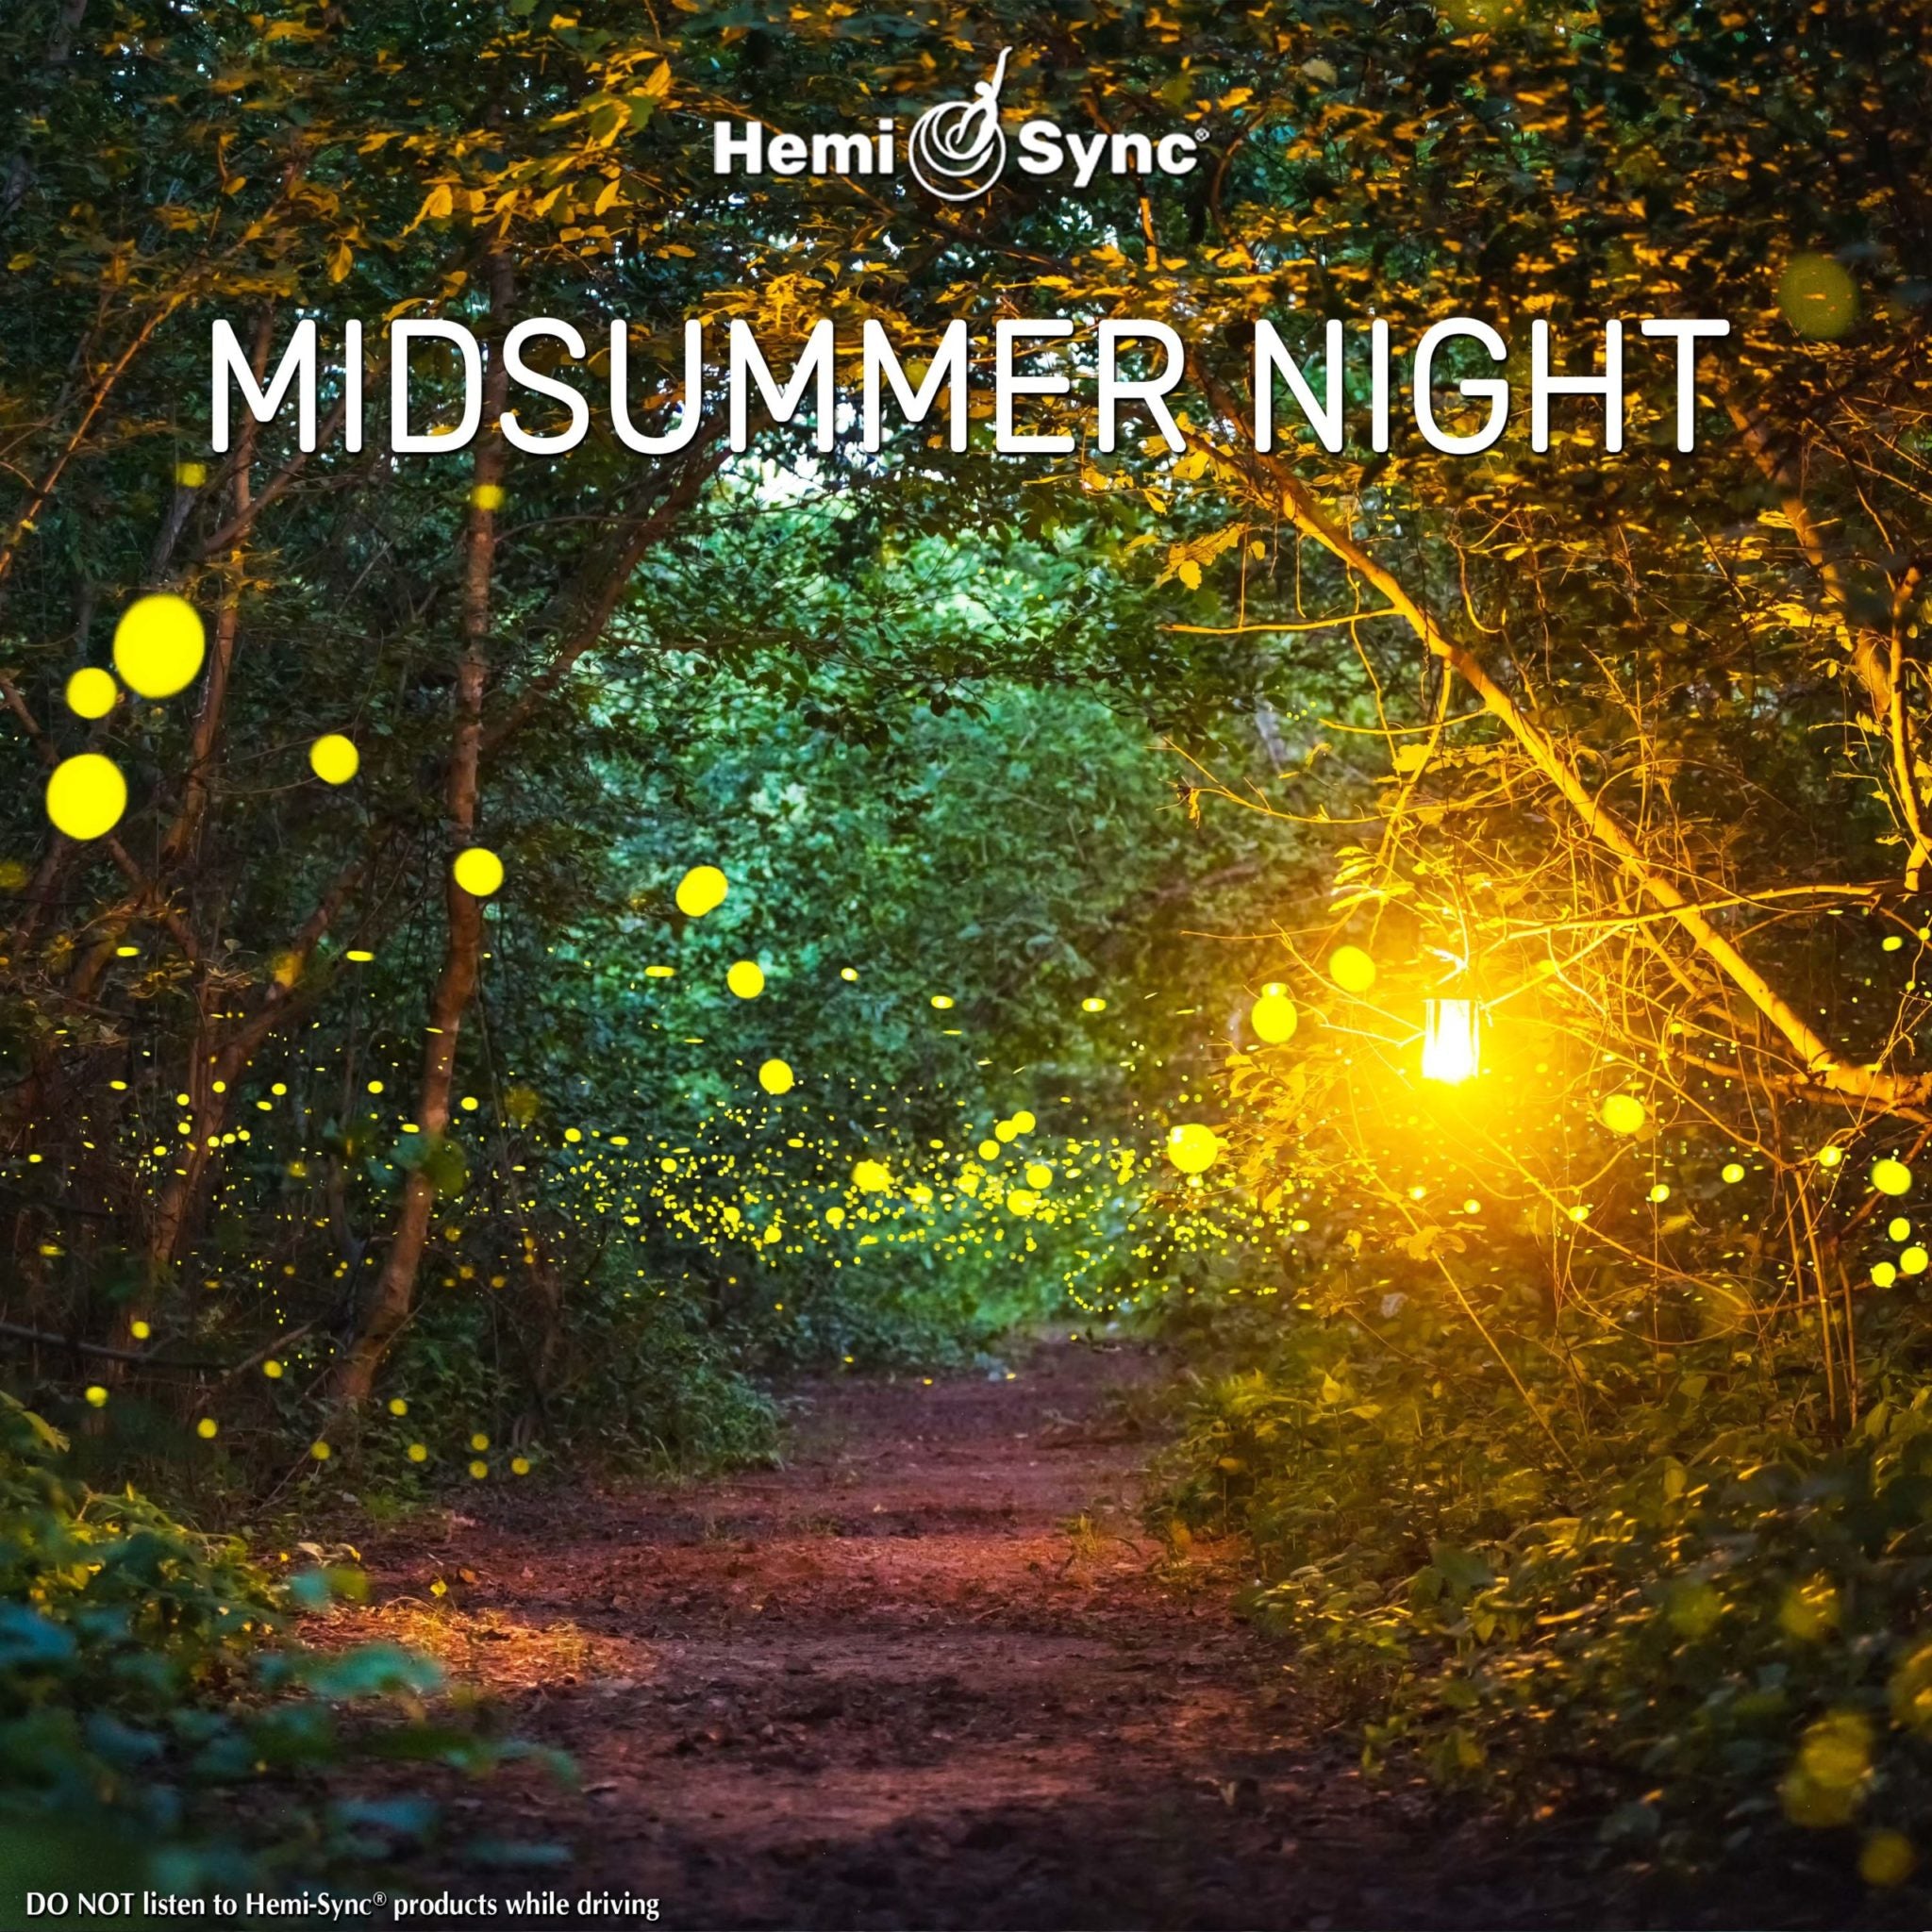 Midsummer Night